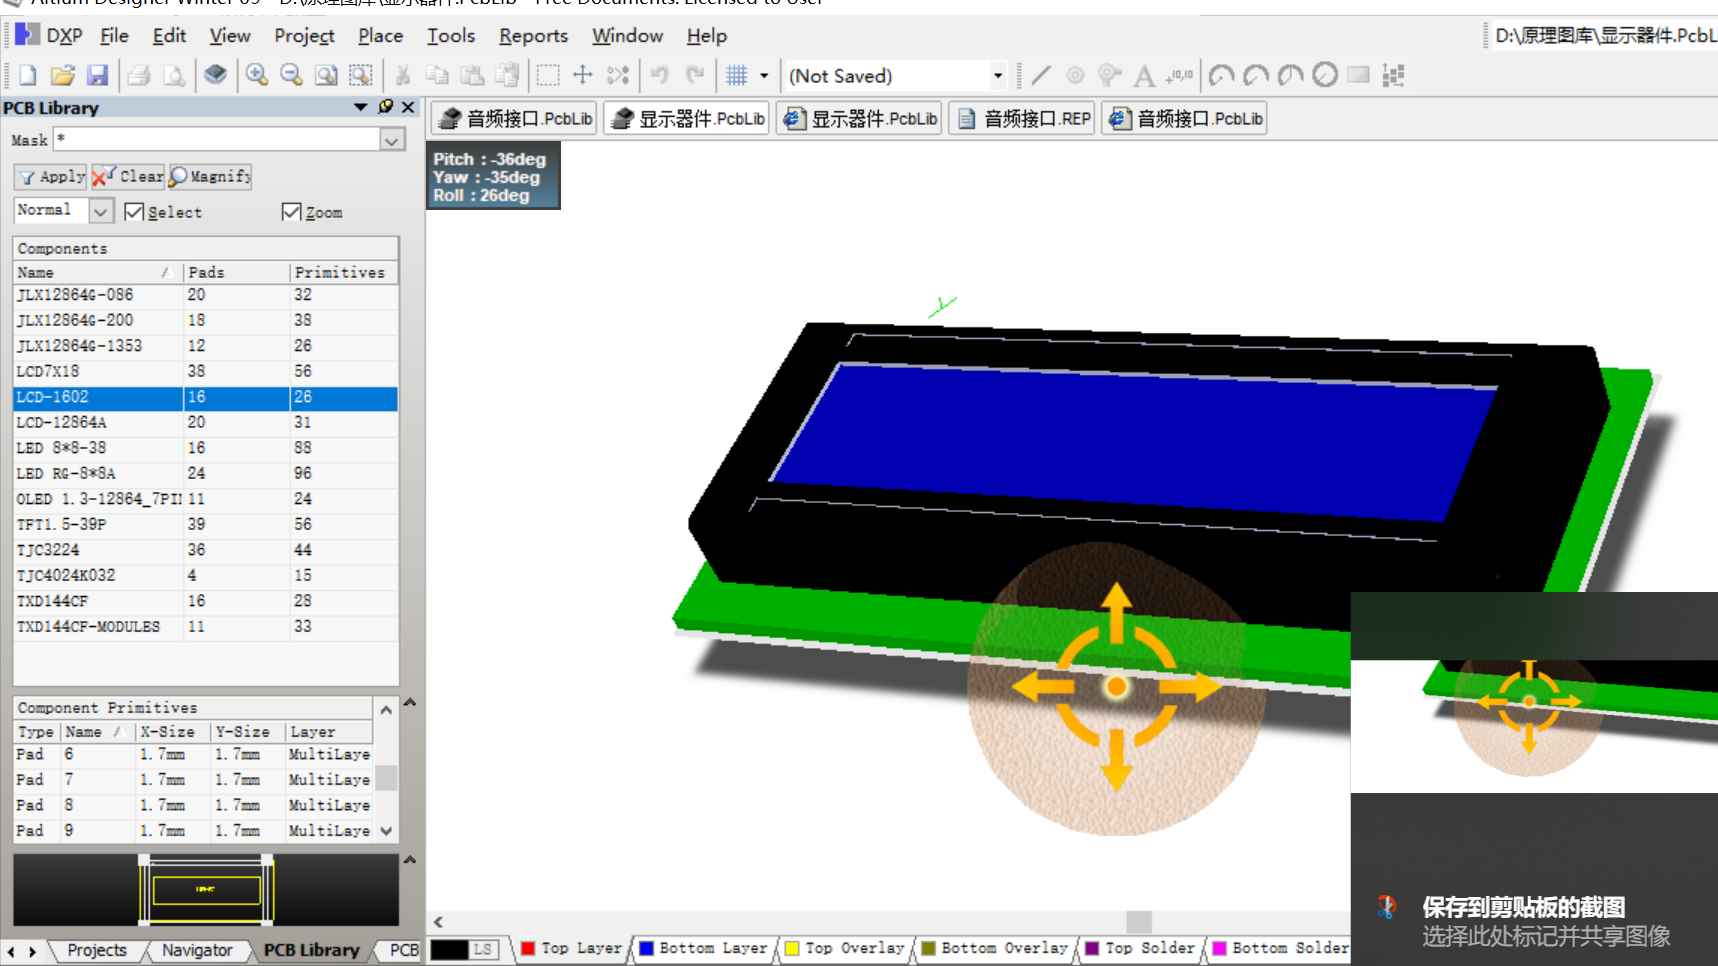 LCD1602 LED灯阵列显示器件Altium Designer AD PCB封装库2D3D元件库